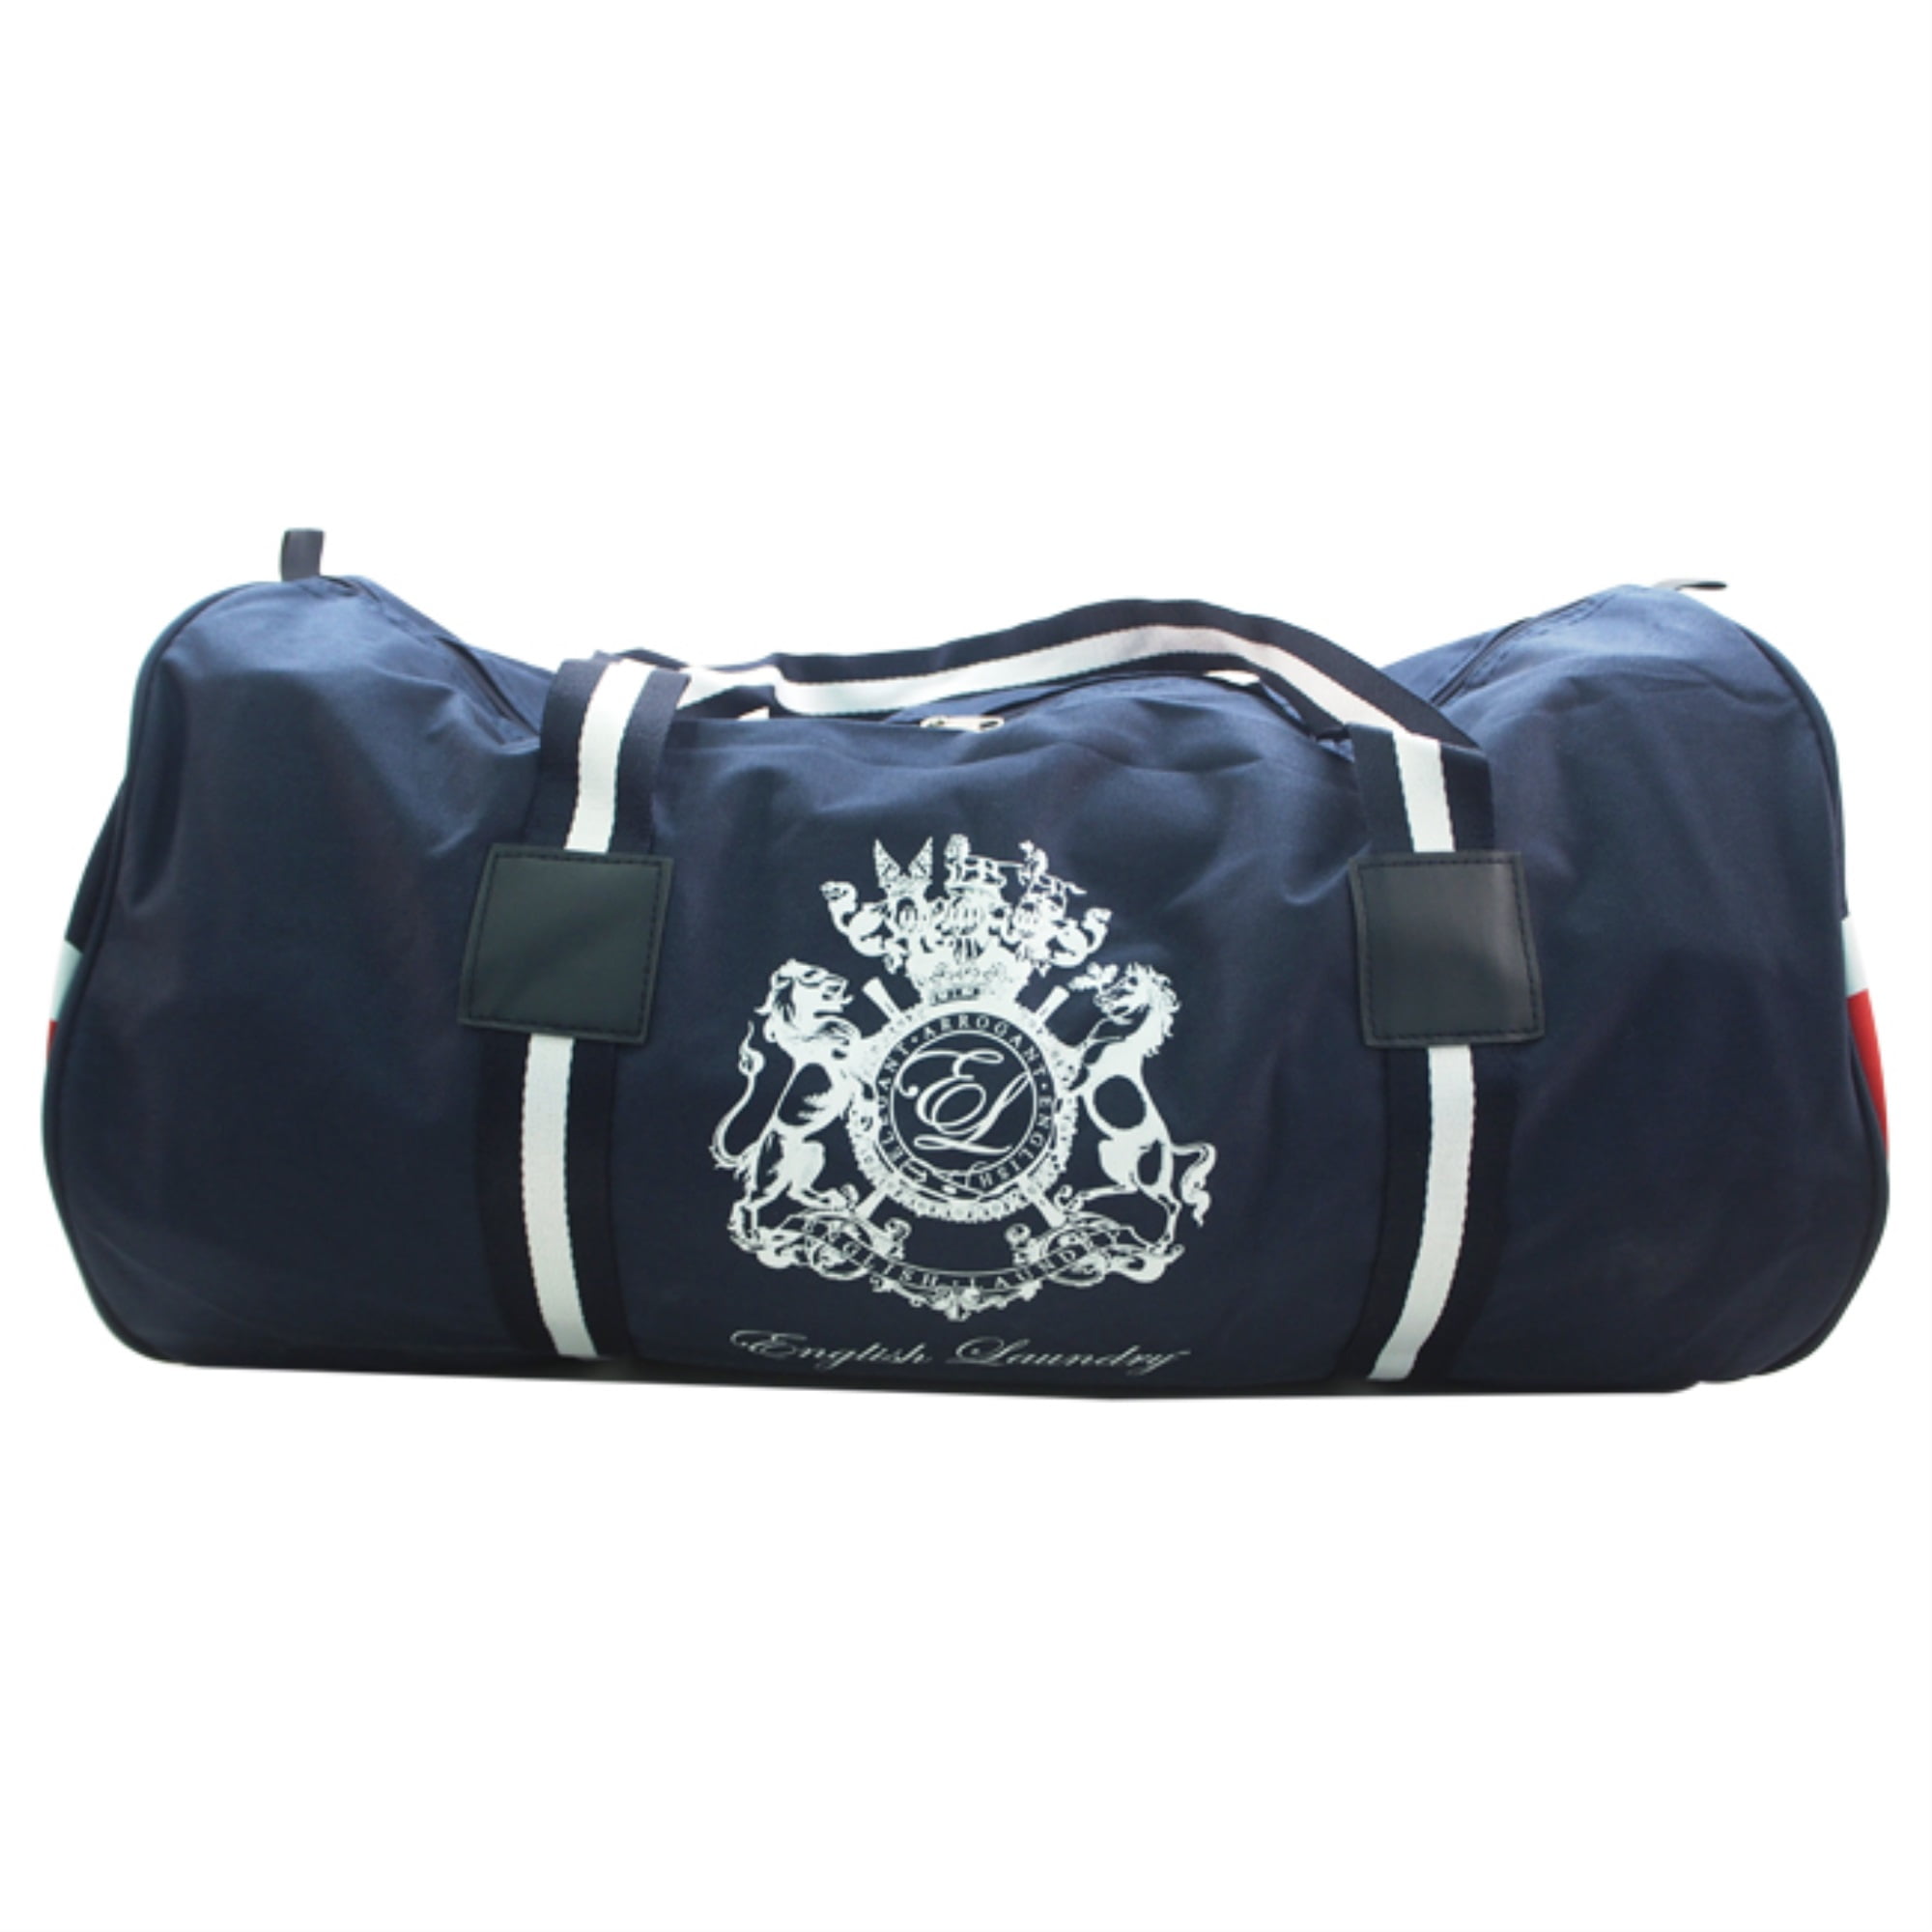 English Laundry Union Jack Duffle Bag by English Laundry for Unisex - 1 Pc  Bag